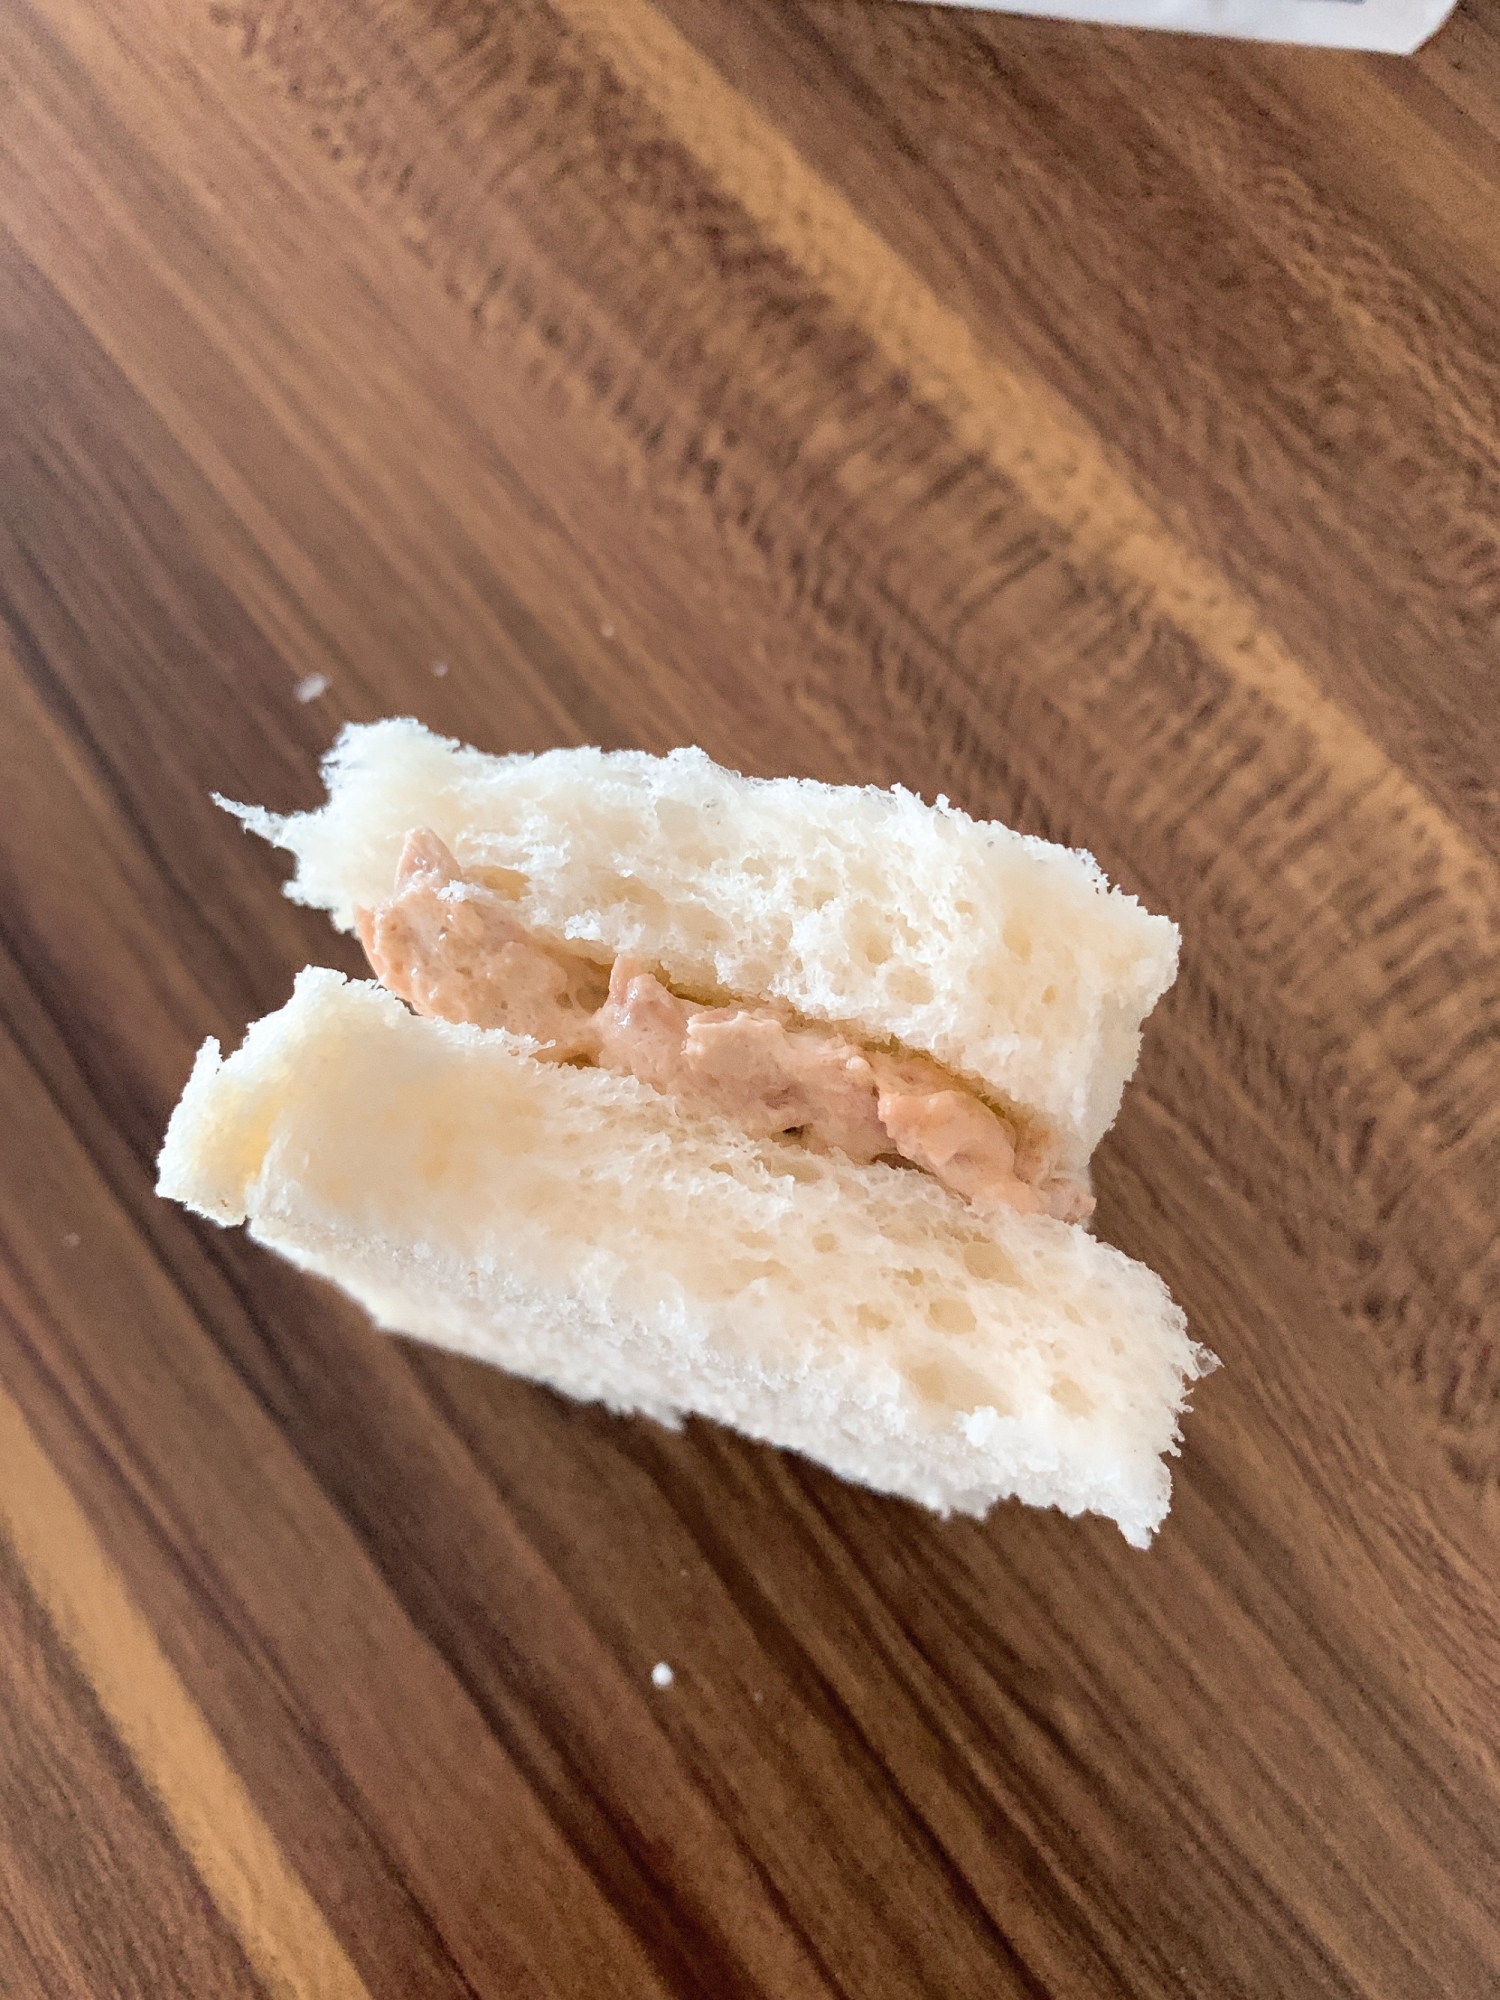 ツナマヨのサンドイッチ